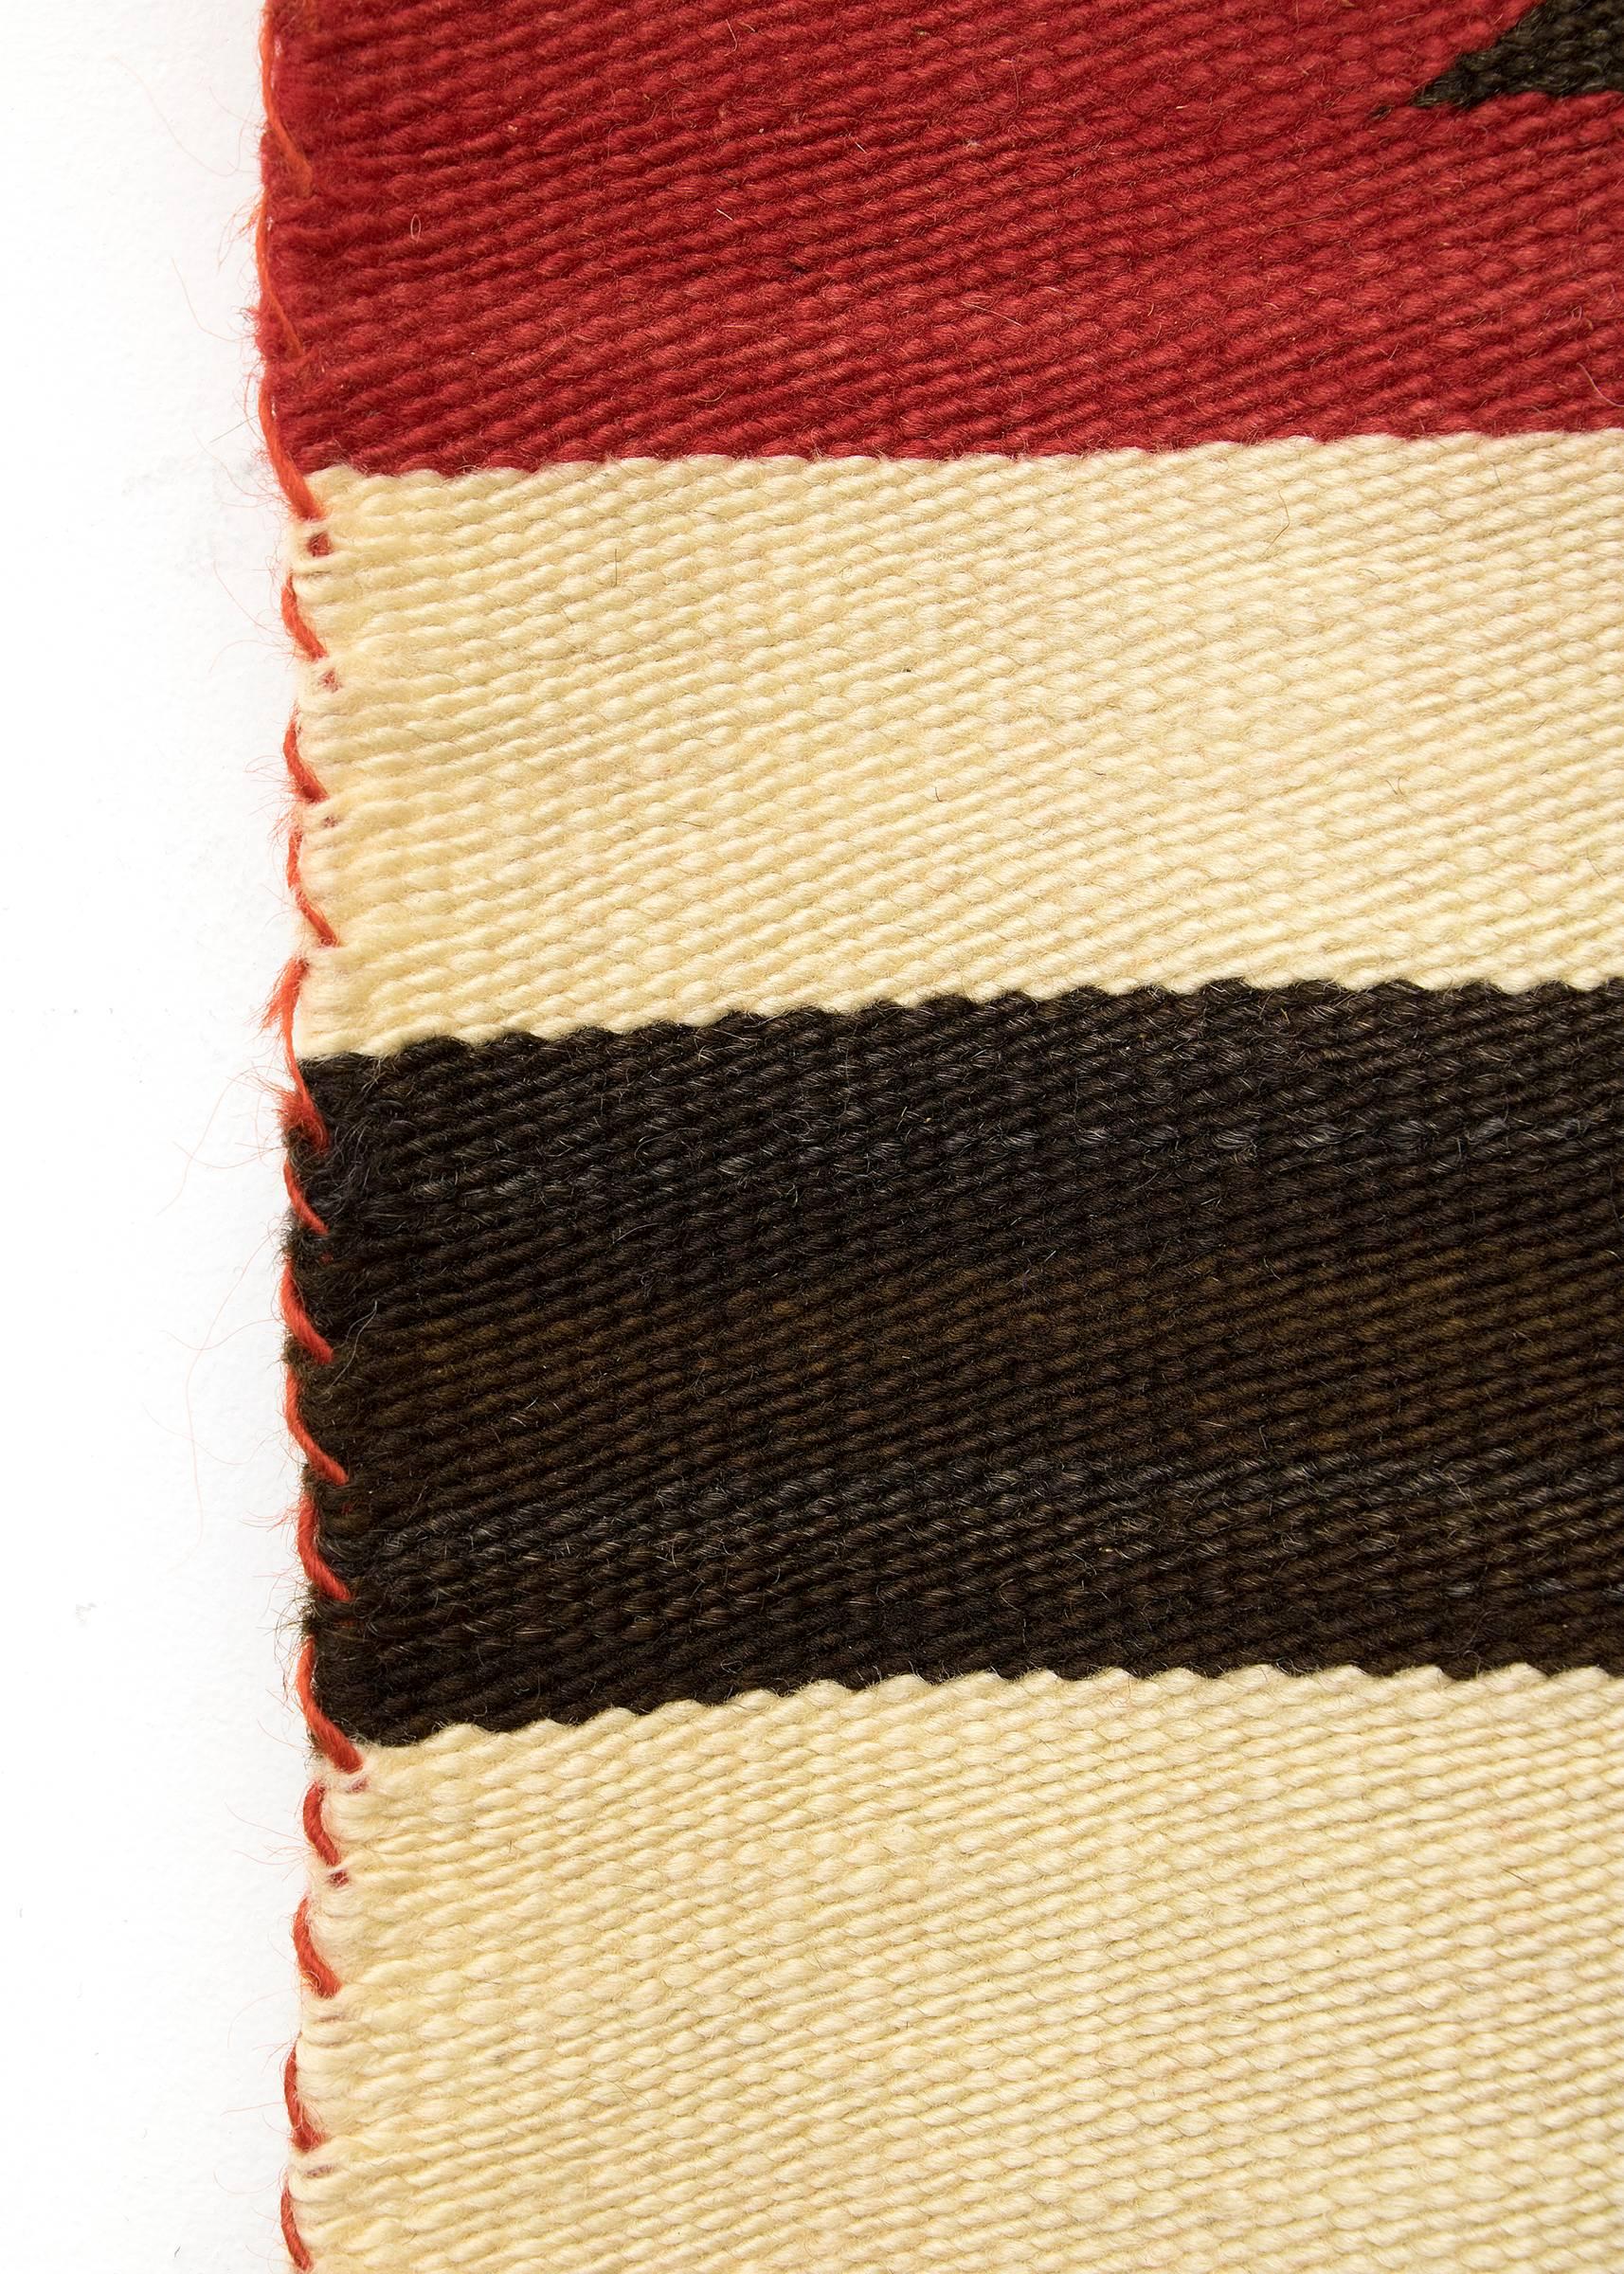 Hand-Woven Vintage Navajo Rug, Chief's Blanket Revival, circa 1930